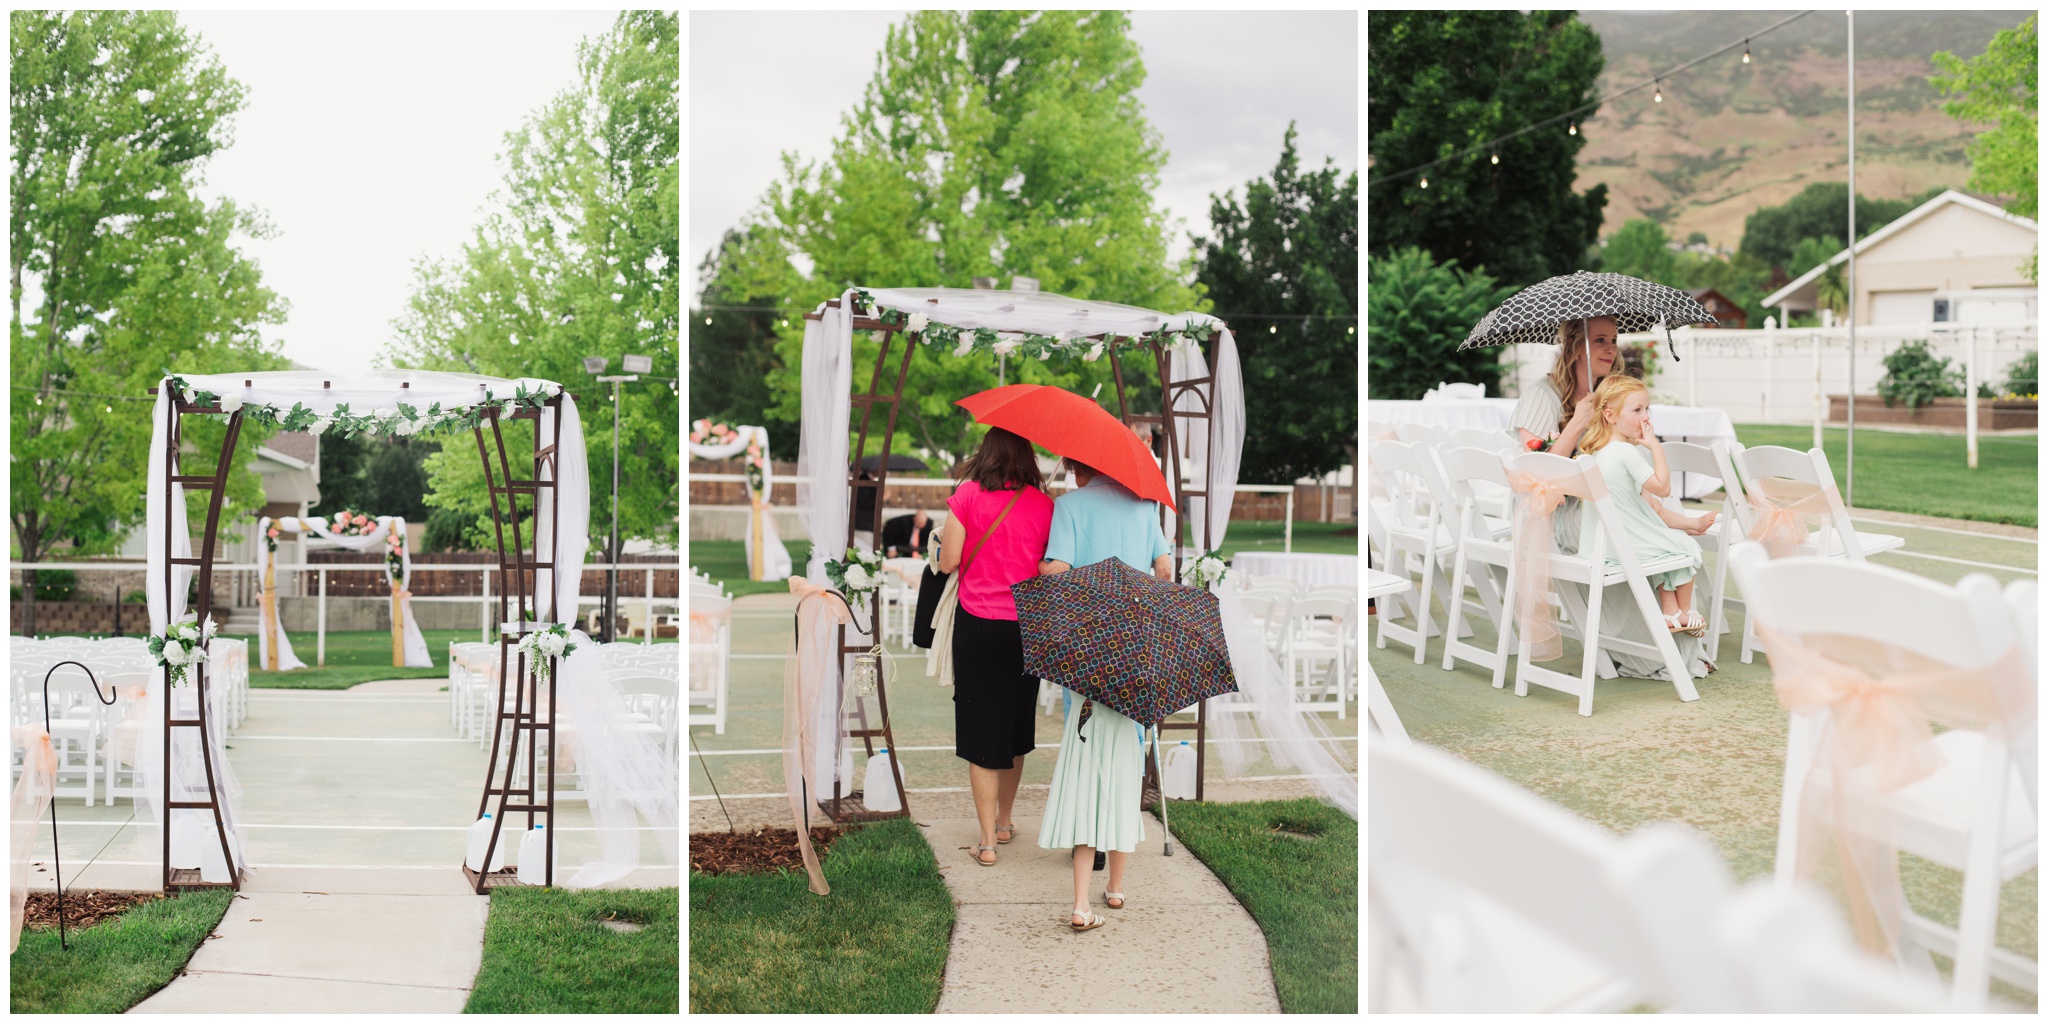 Outdoor wedding in the rain